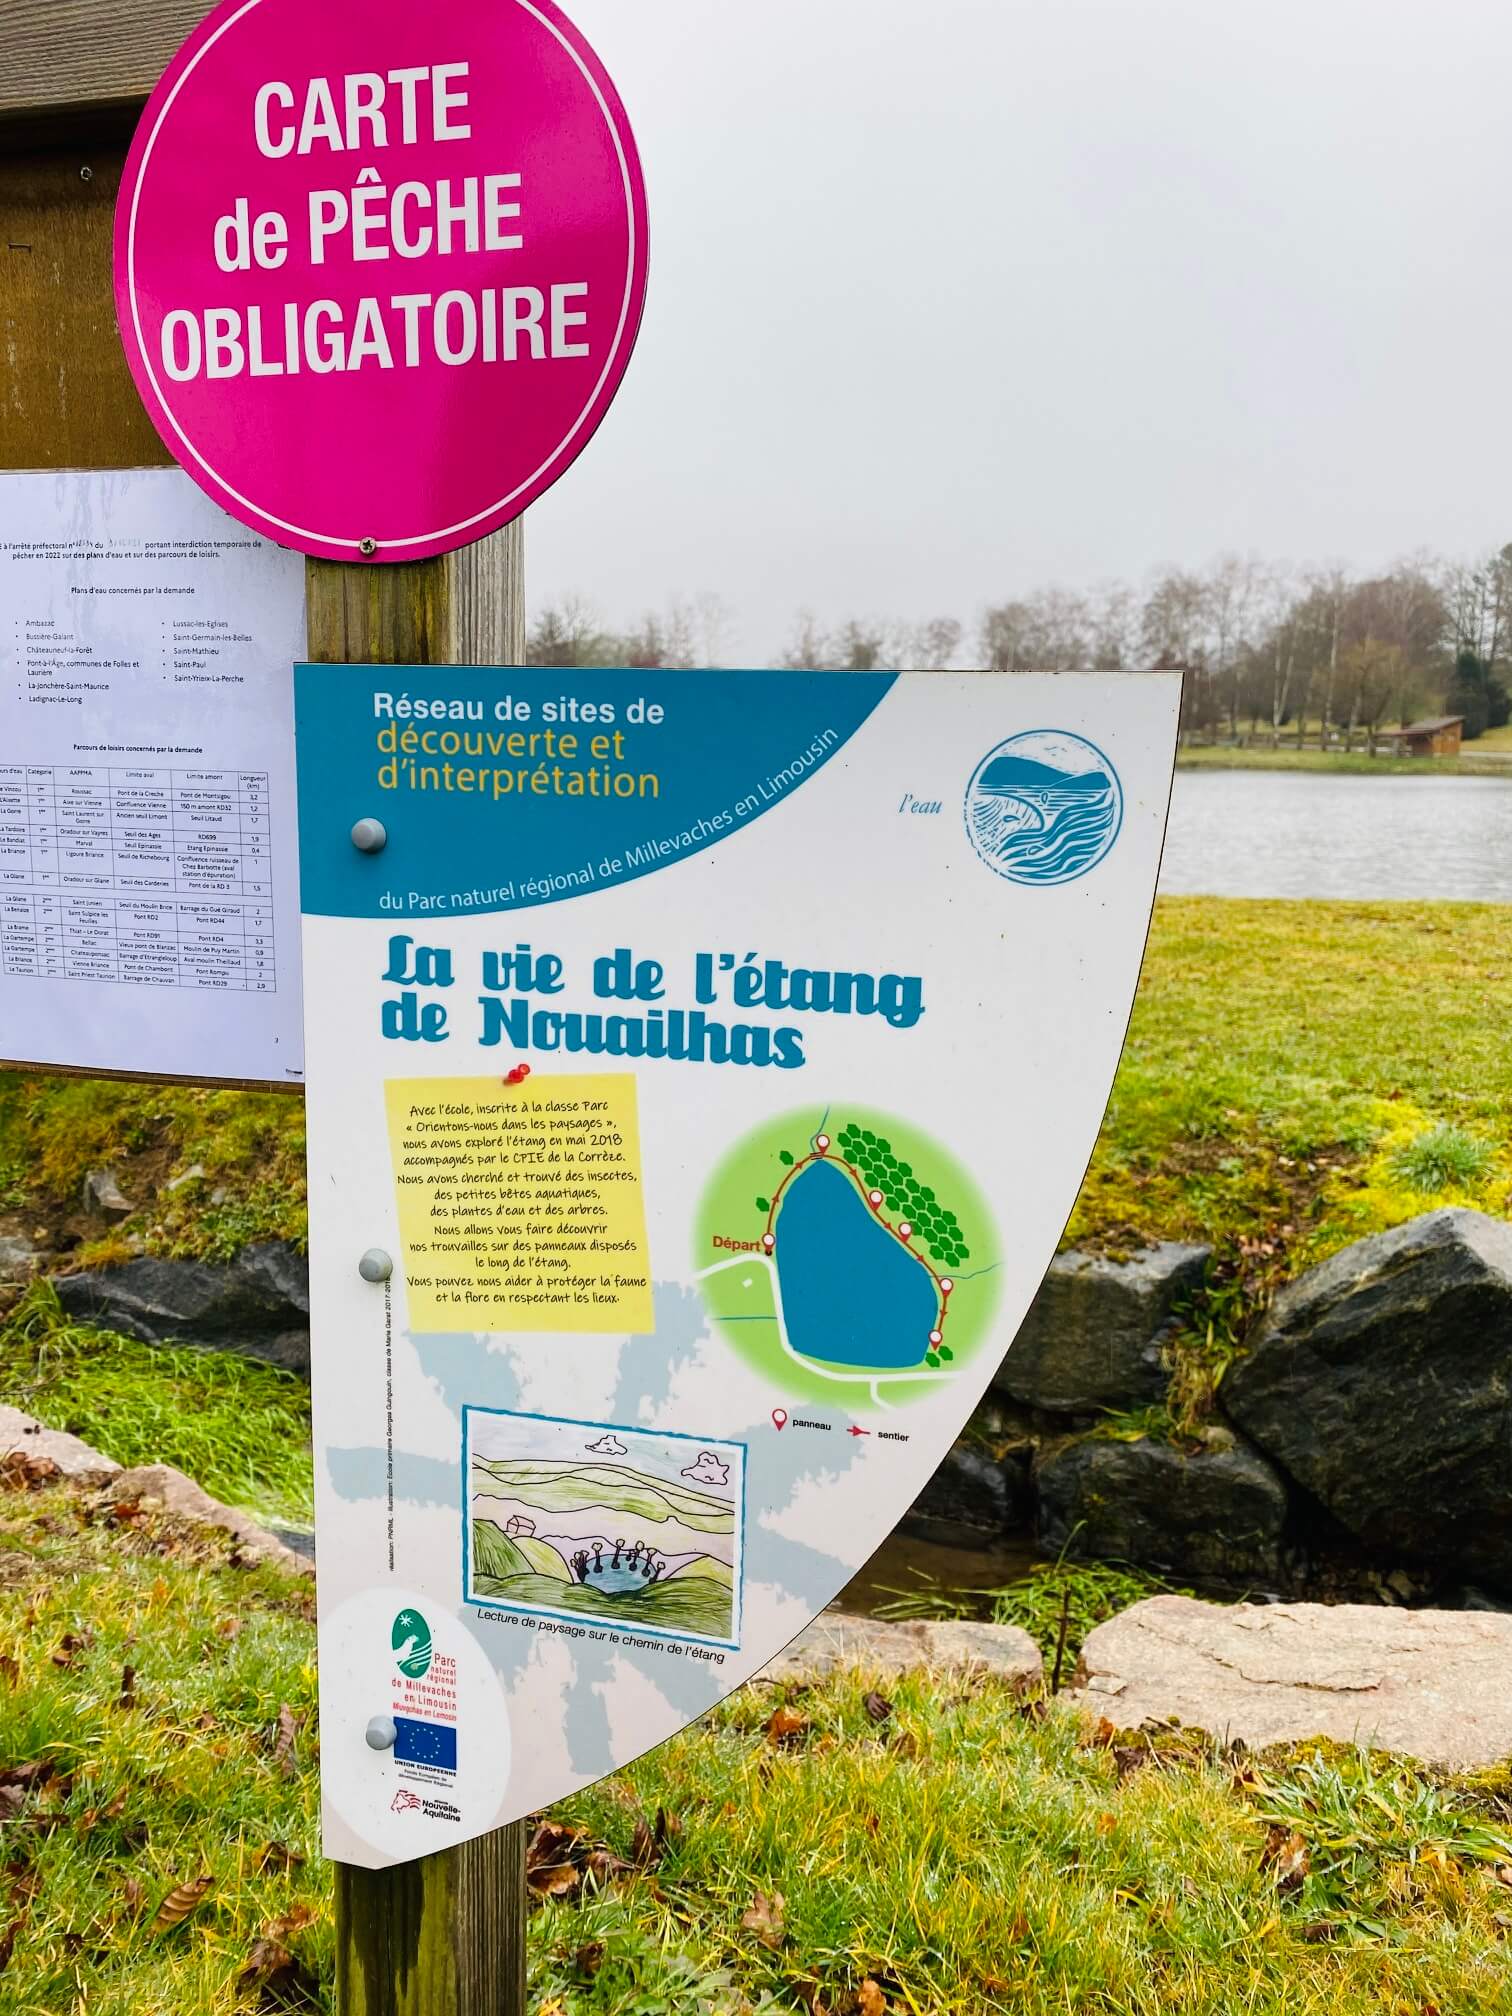 Plan d'eau de La Croisille sur Briance null France null null null null